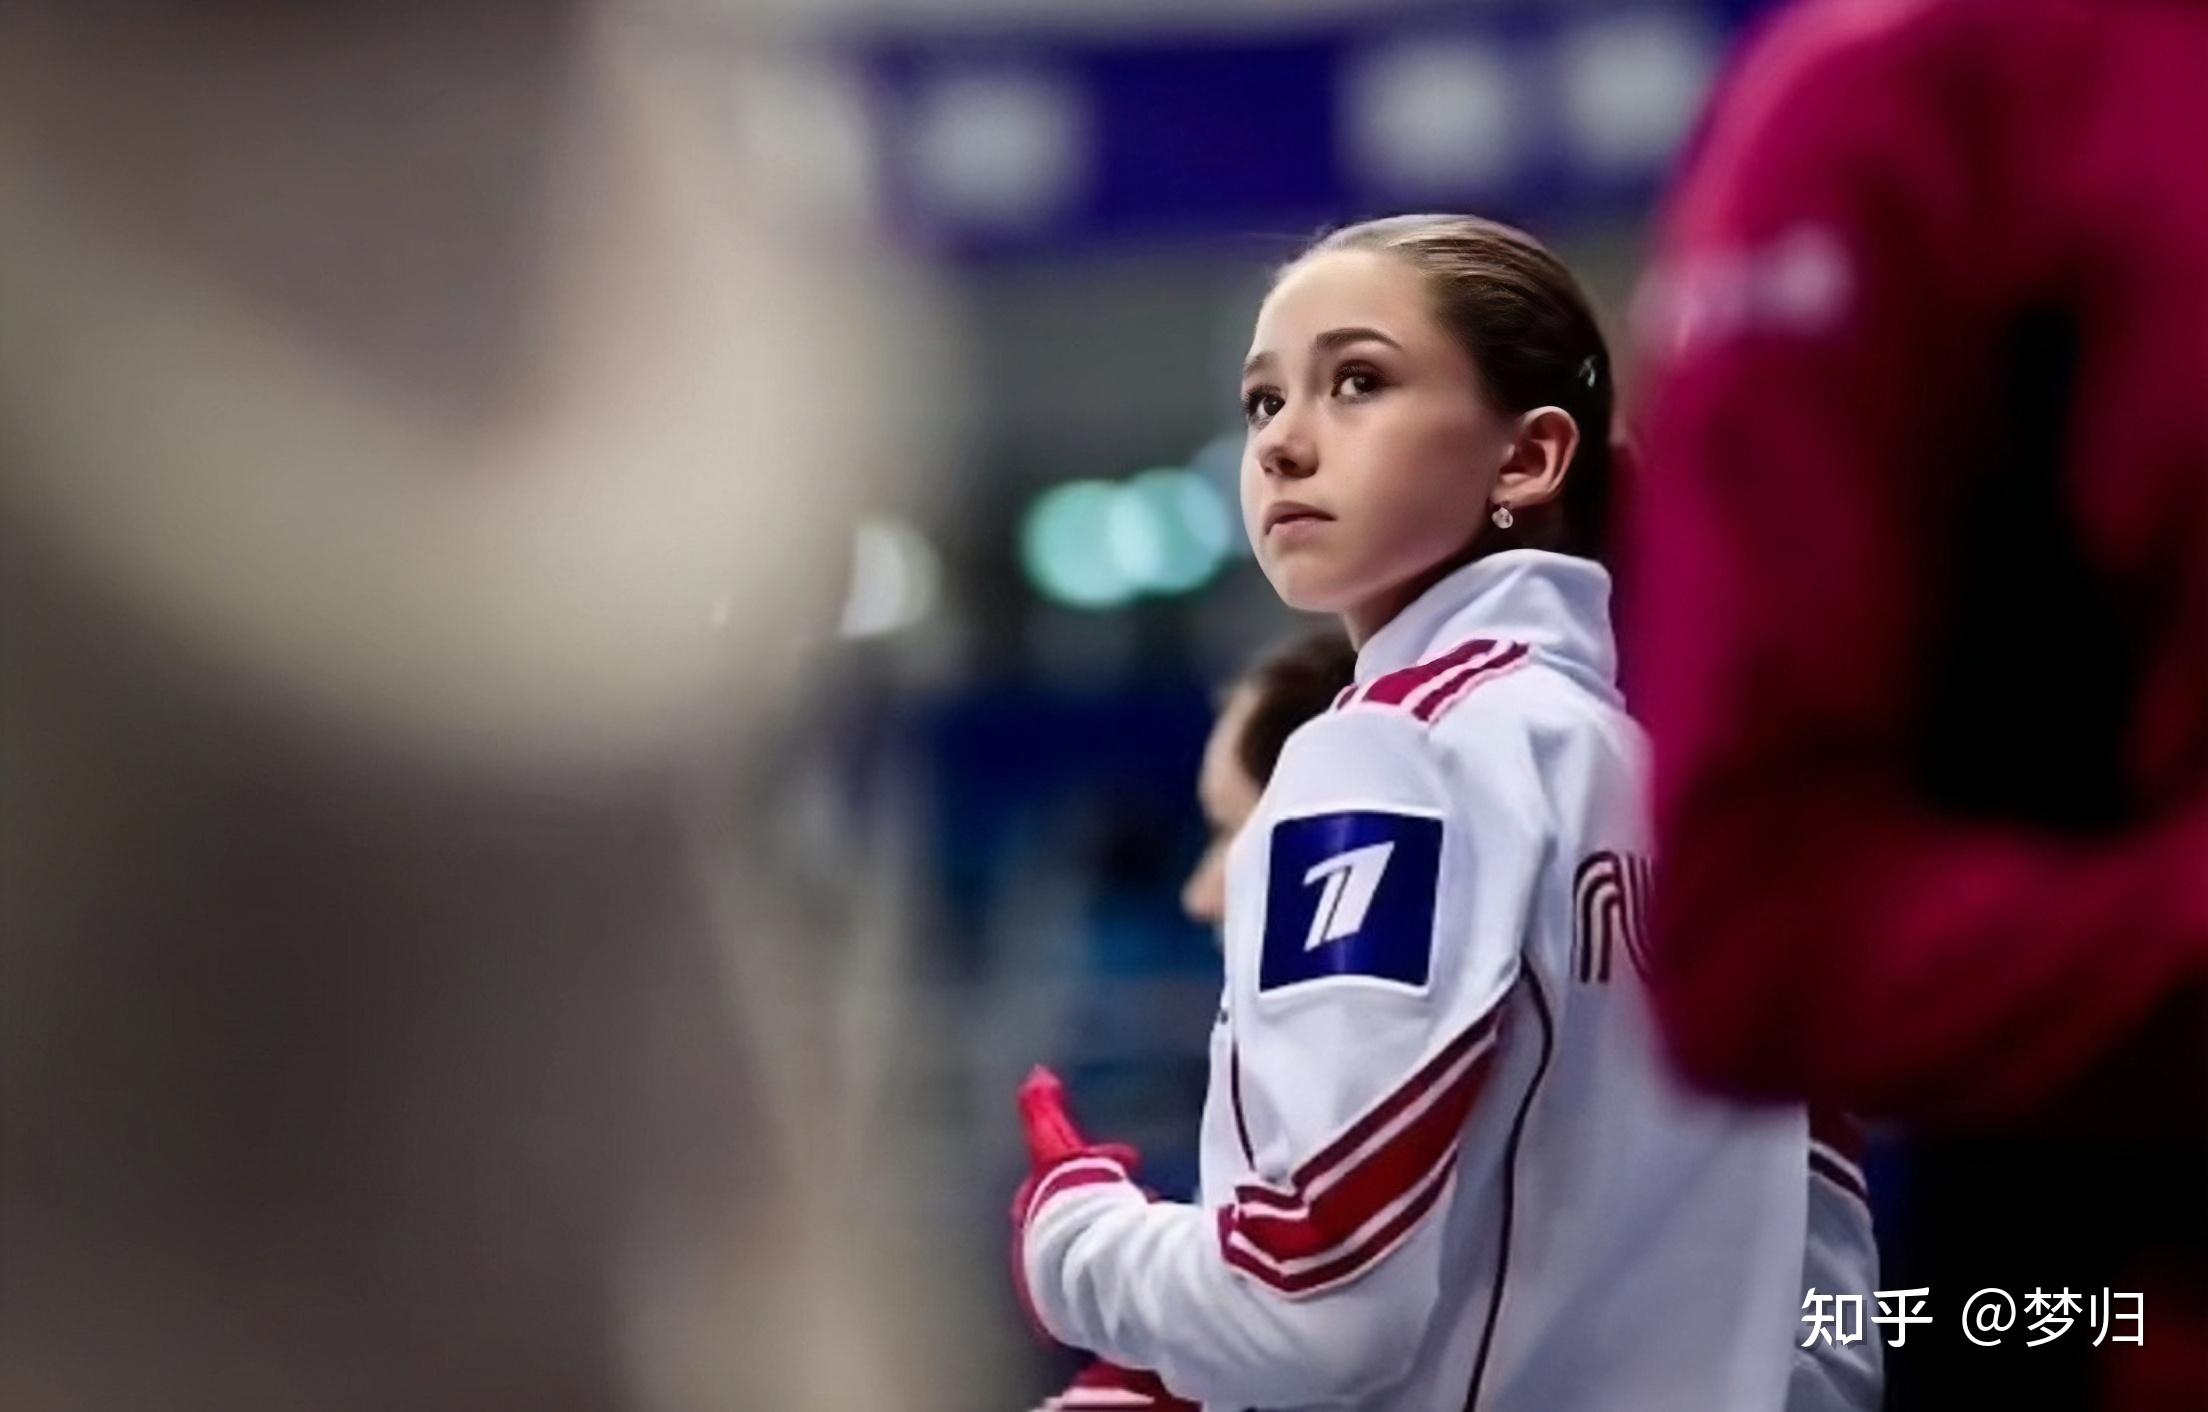 俄罗斯花滑运动员「k宝」瓦利耶娃被指用兴奋剂,2022 冬奥成绩取消且